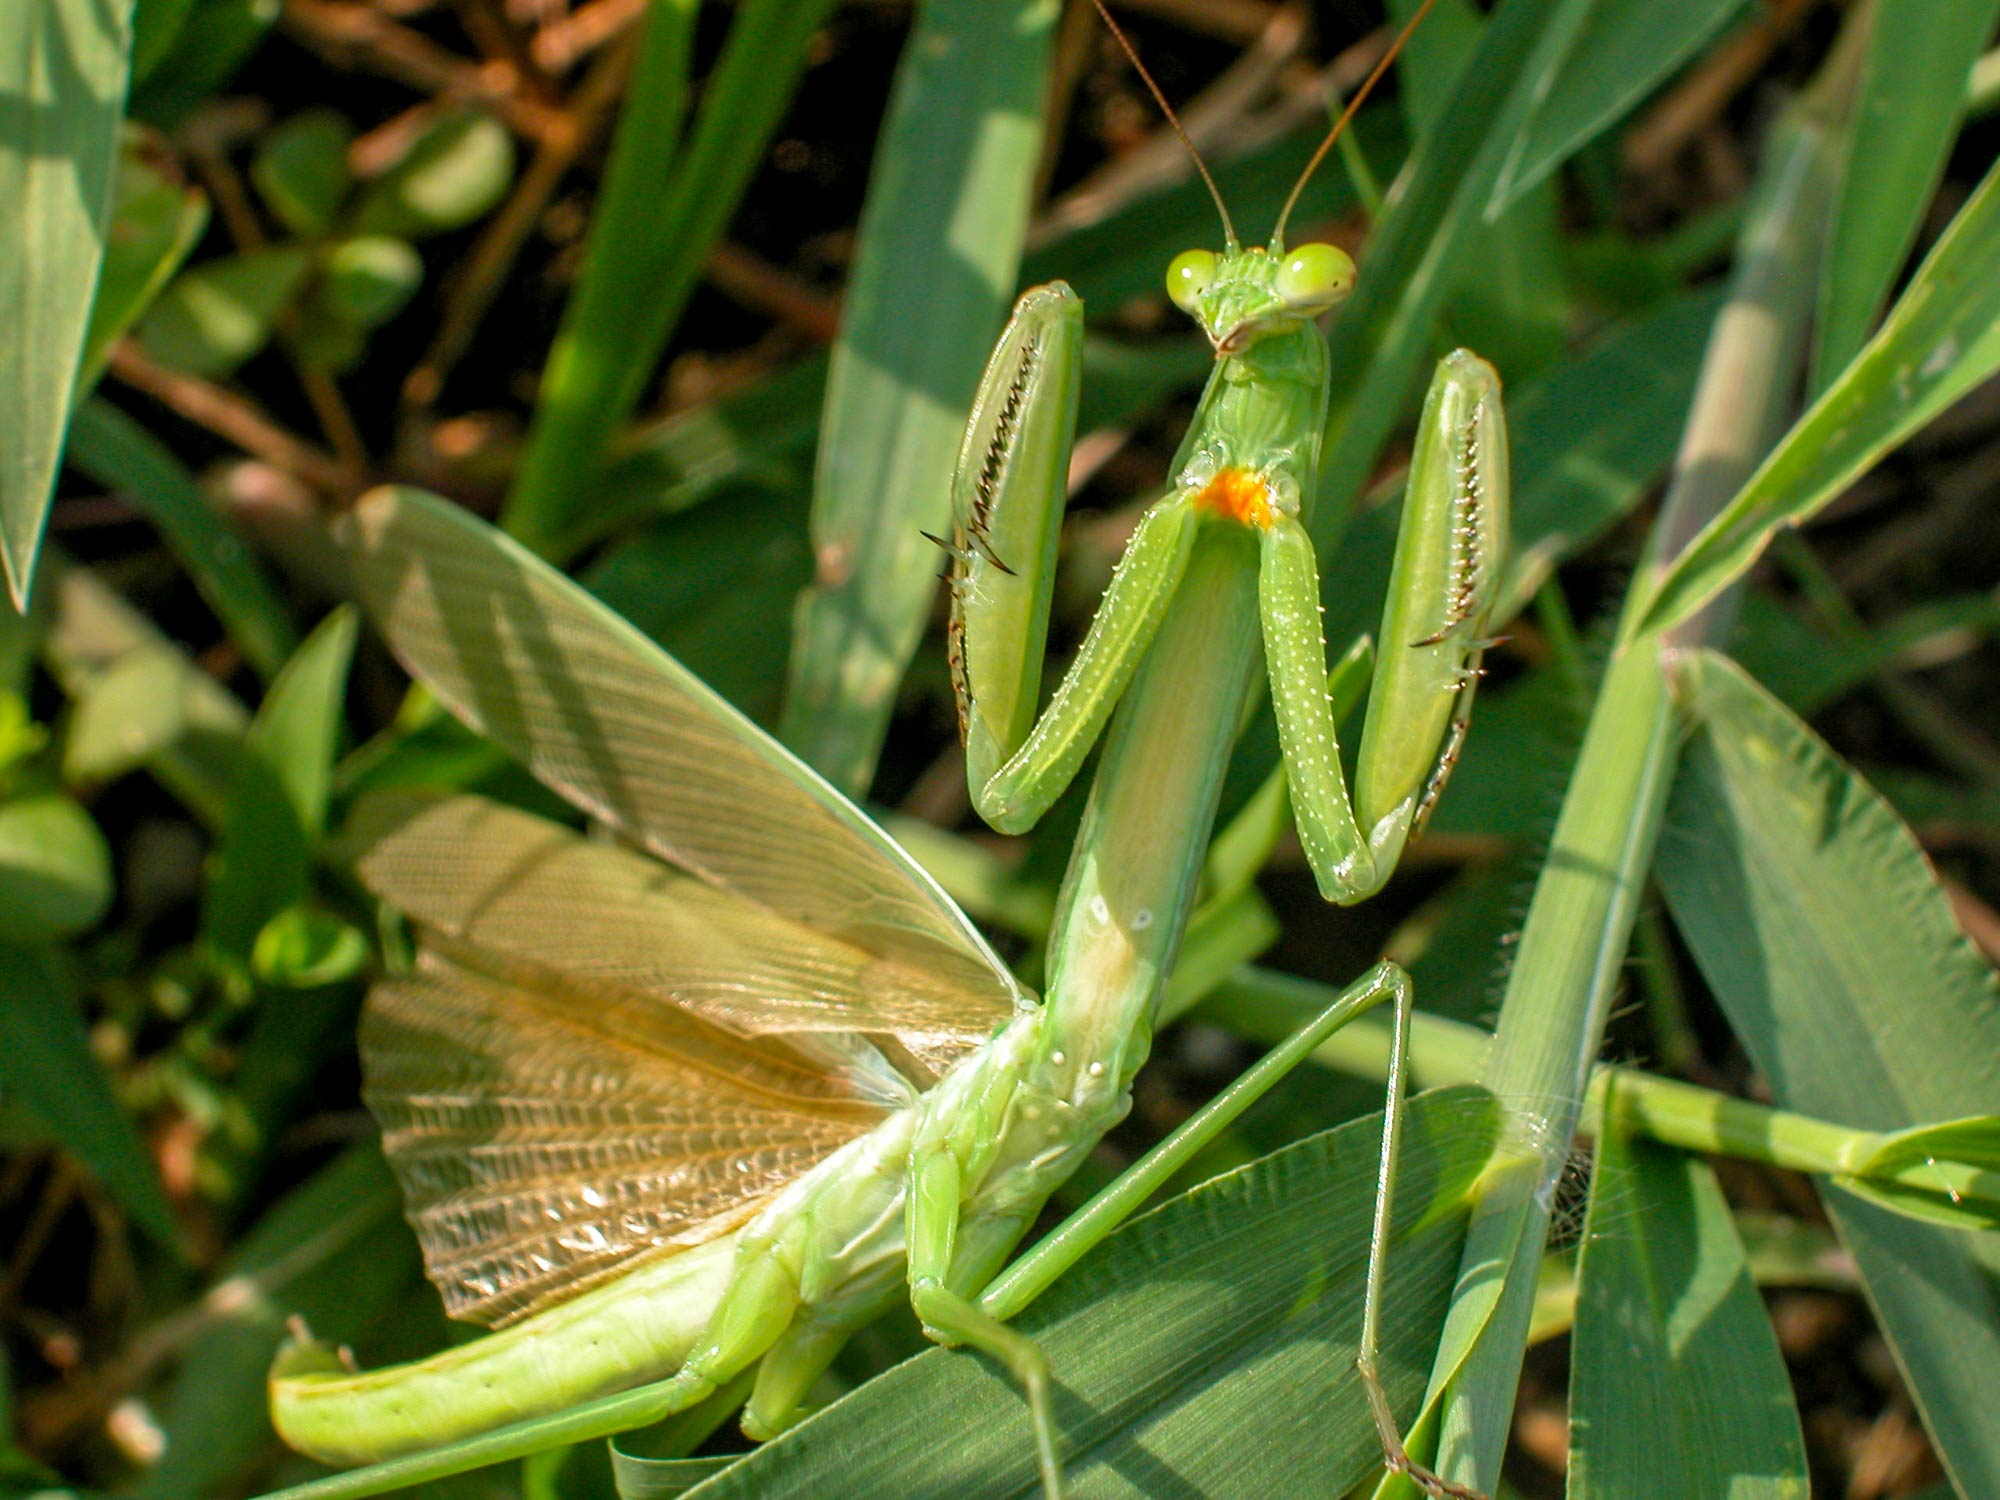 カマキリ チョウセンカマキリ の生態や見分け方 虫の写真と生態なら昆虫写真図鑑 ムシミル